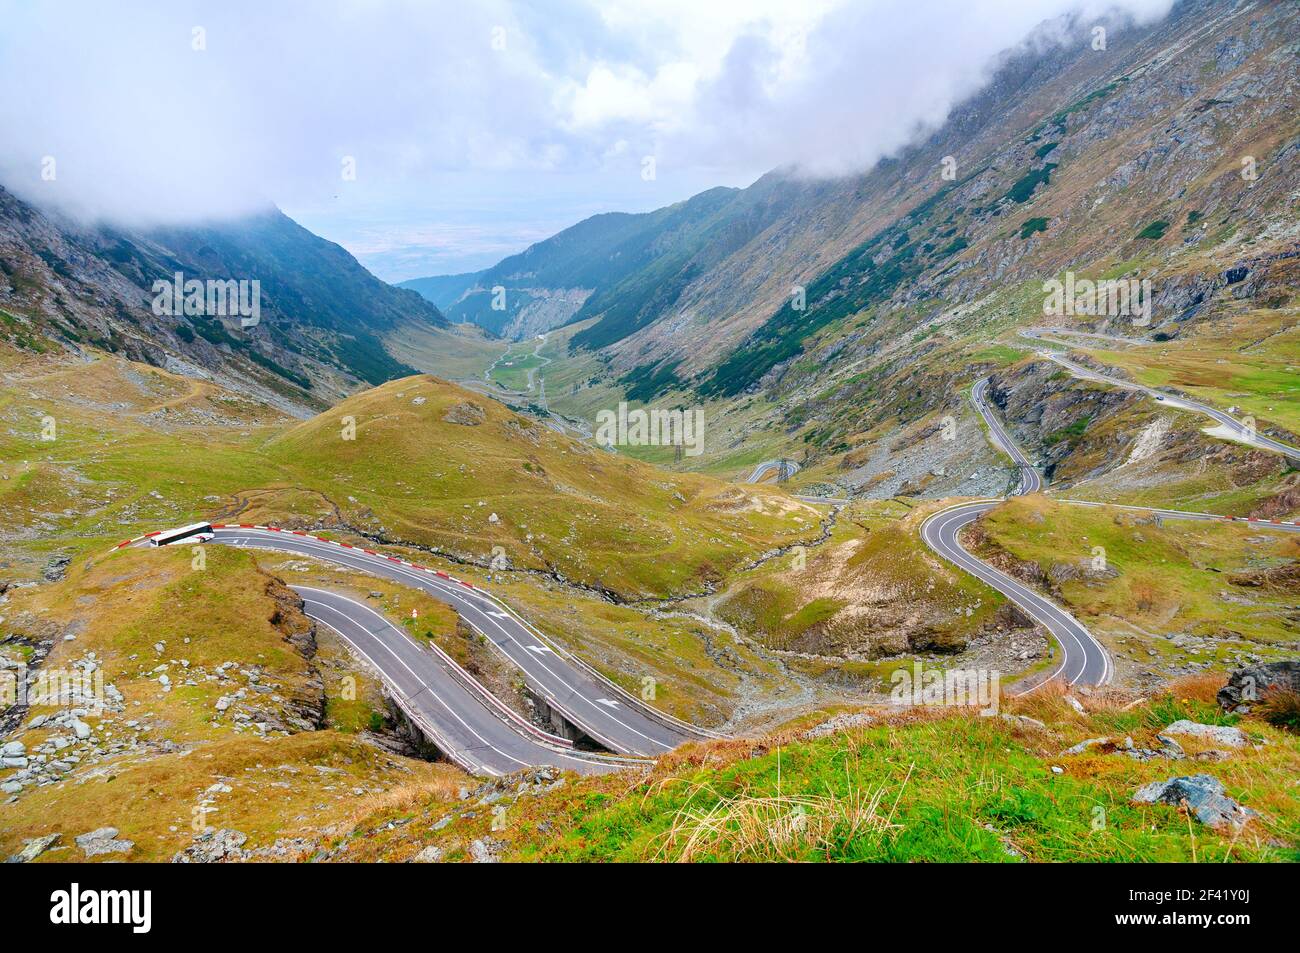 Transfagarasan Highway (Transfagarash), die schönsten und gefährlichen Straße in Europa, Rumänien. Karpaten, Fagaras Kamm. Stockfoto